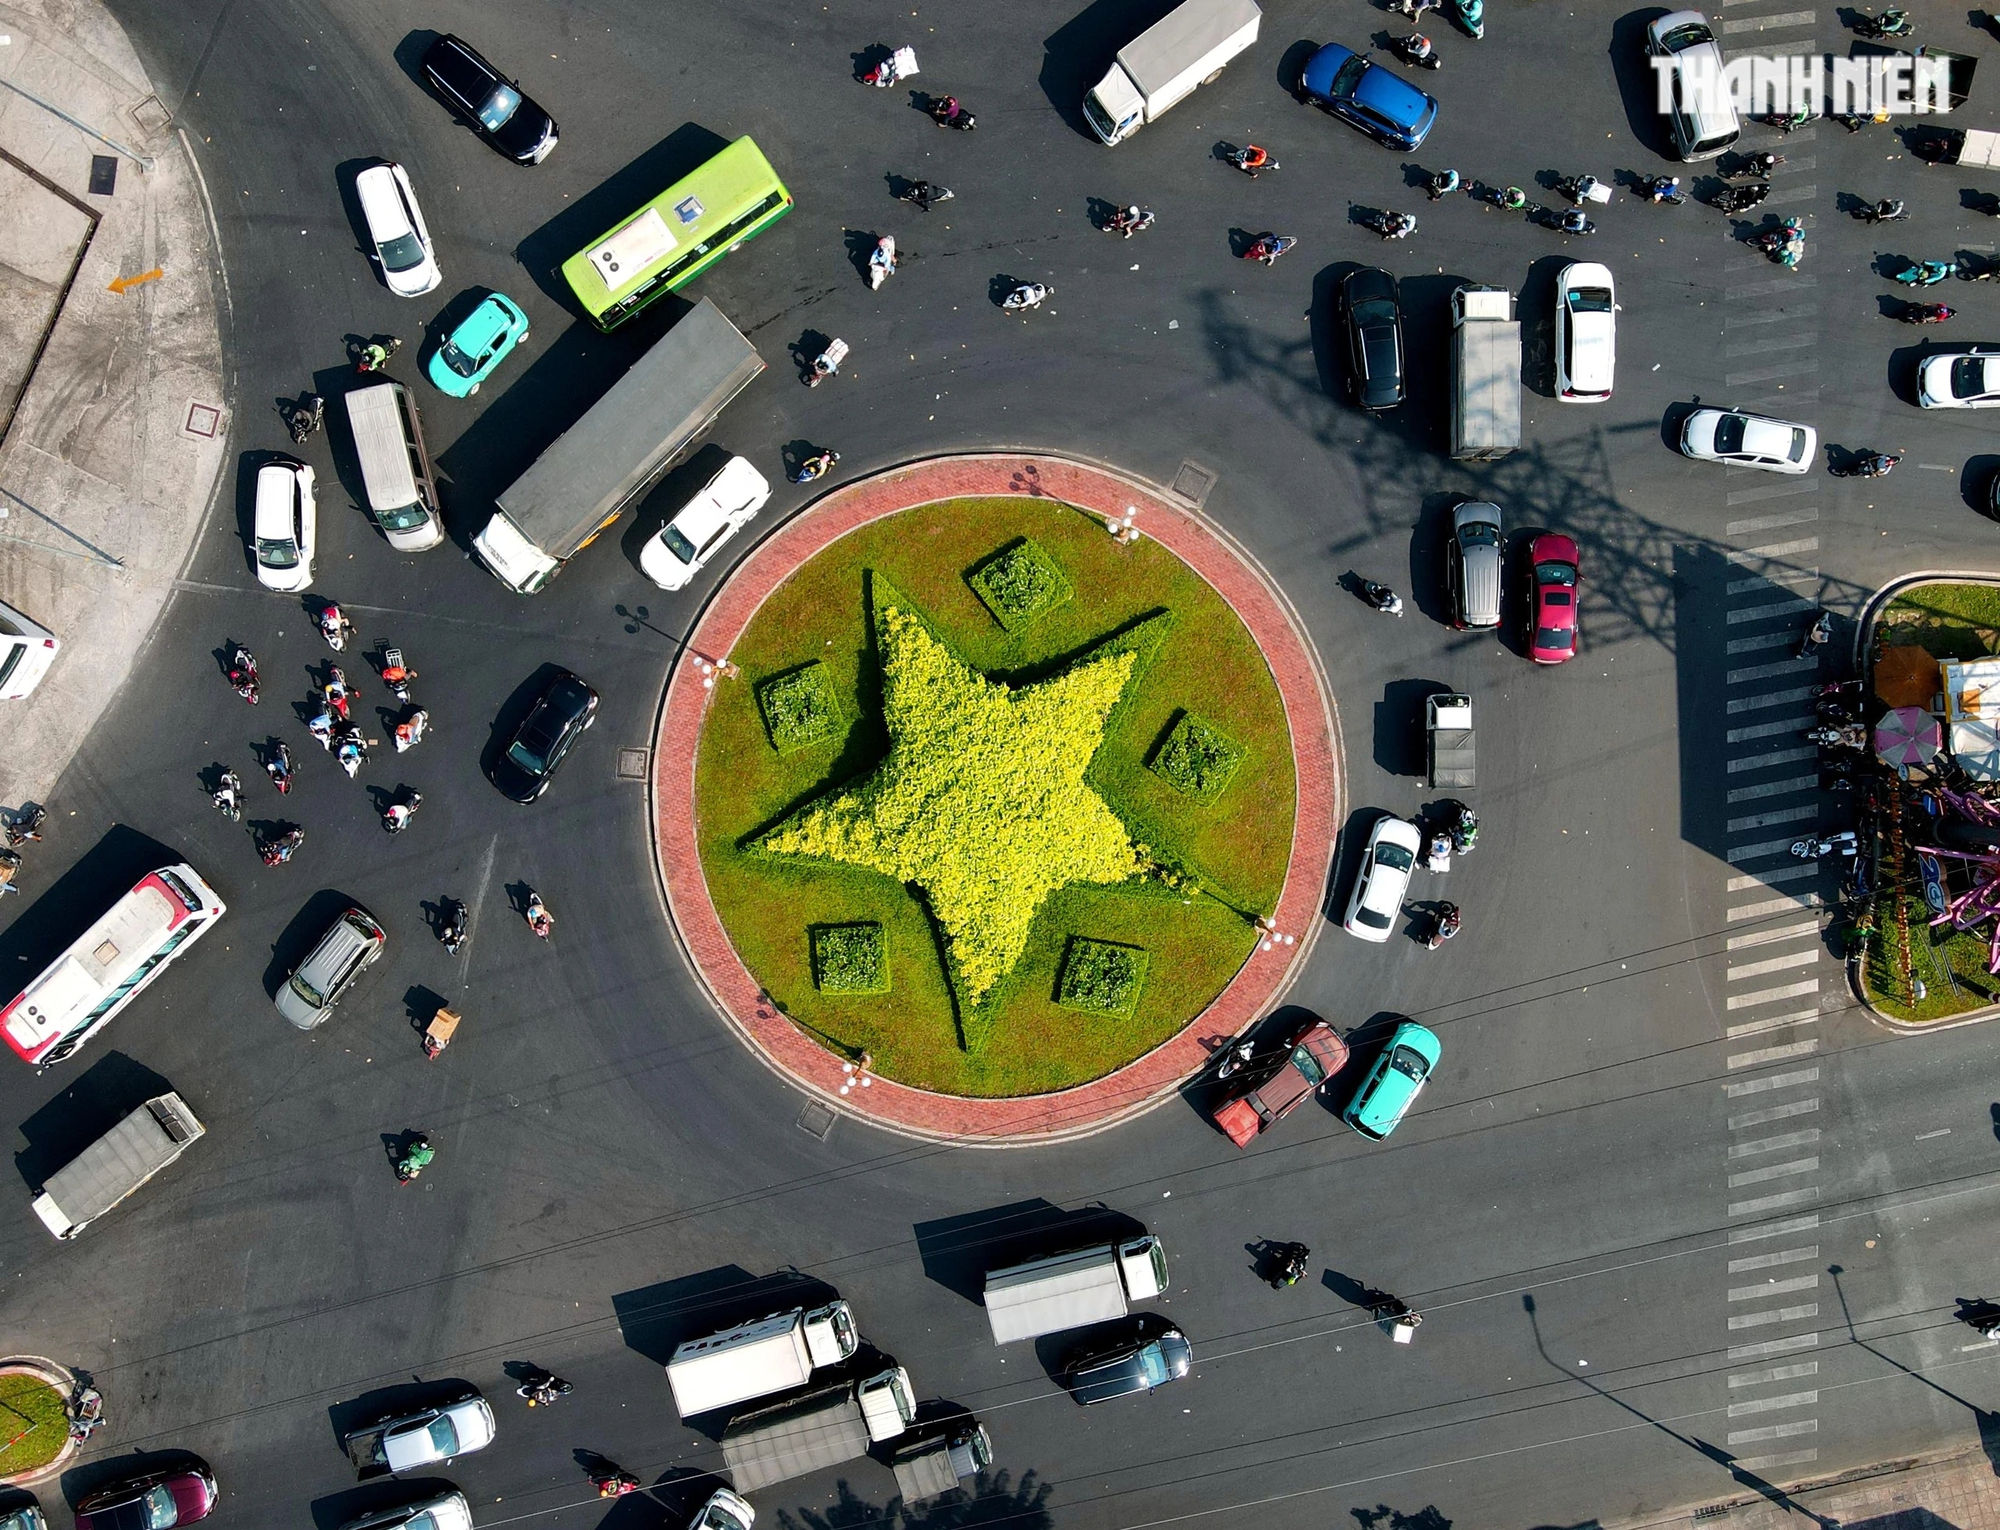 Hiện tại vòng xoay mũi tàu Phú Lâm được phủ cây xanh hình ngôi sao năm cánh, nhìn từ trên cao